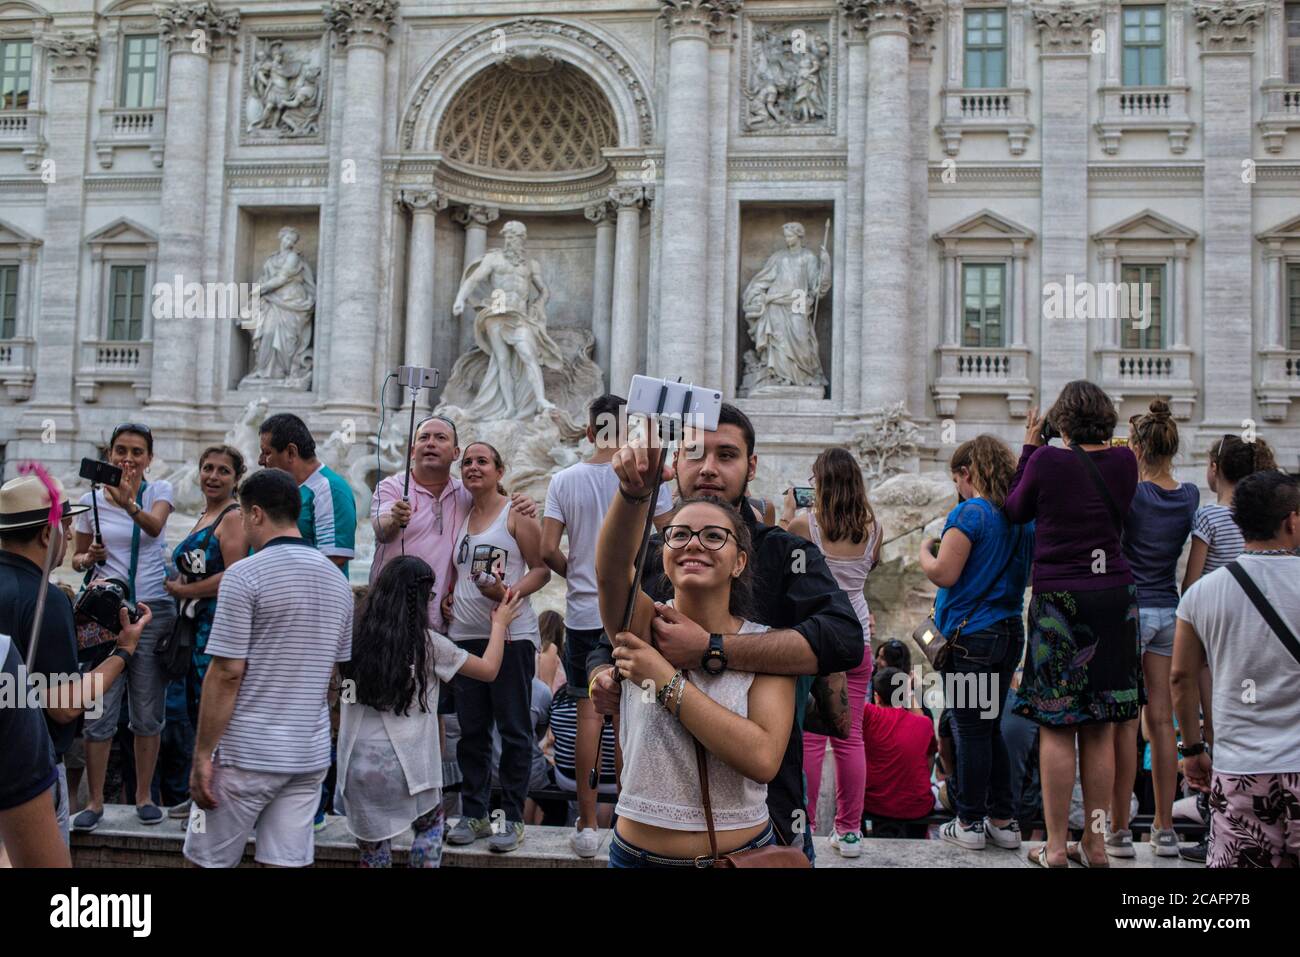 Europe - Italie, capitale Rome: Touriste prendre un "selfie" à la fontaine de Trevi qui est l'un des endroits les plus populaires de Rome, des milliers de personnes Banque D'Images